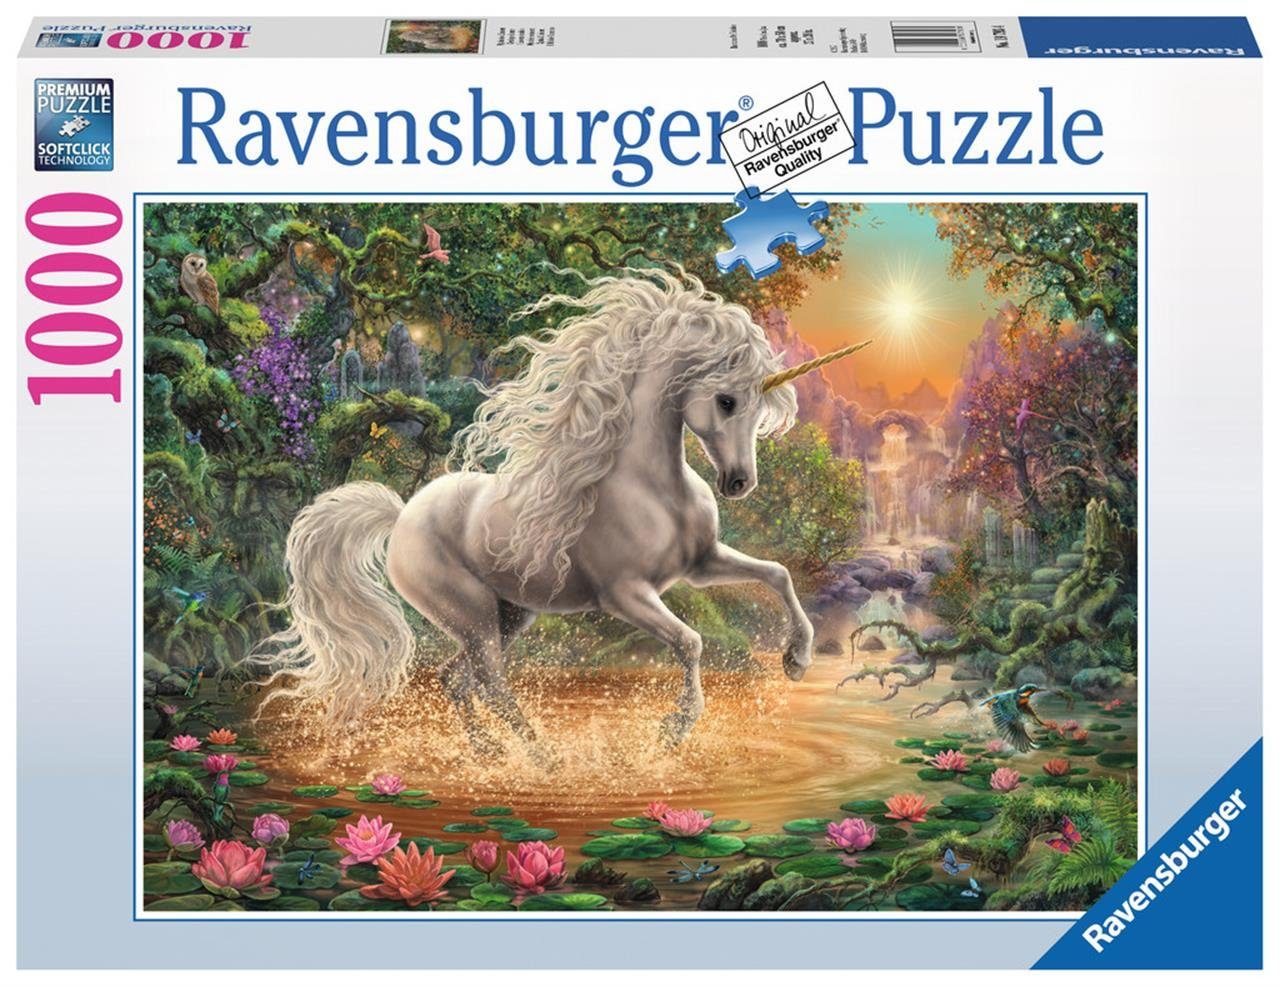 Ravensburger Puzzle Pz. Mystisches Einhorn 1000T., Puzzleteile